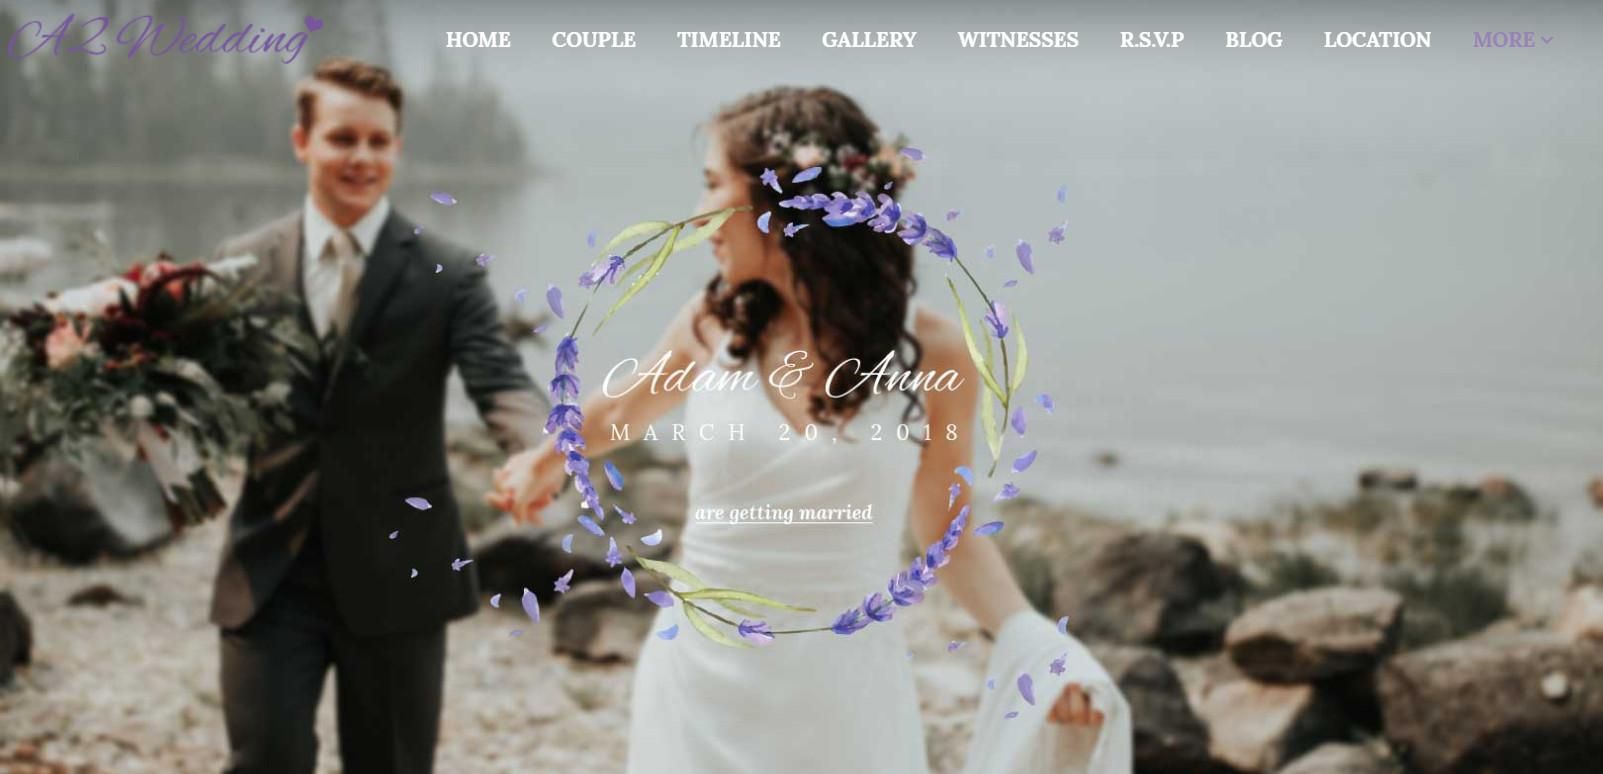 طراحی سایت رویدادهای مجالس عروسی، نامزدی و اطلاعیه ها